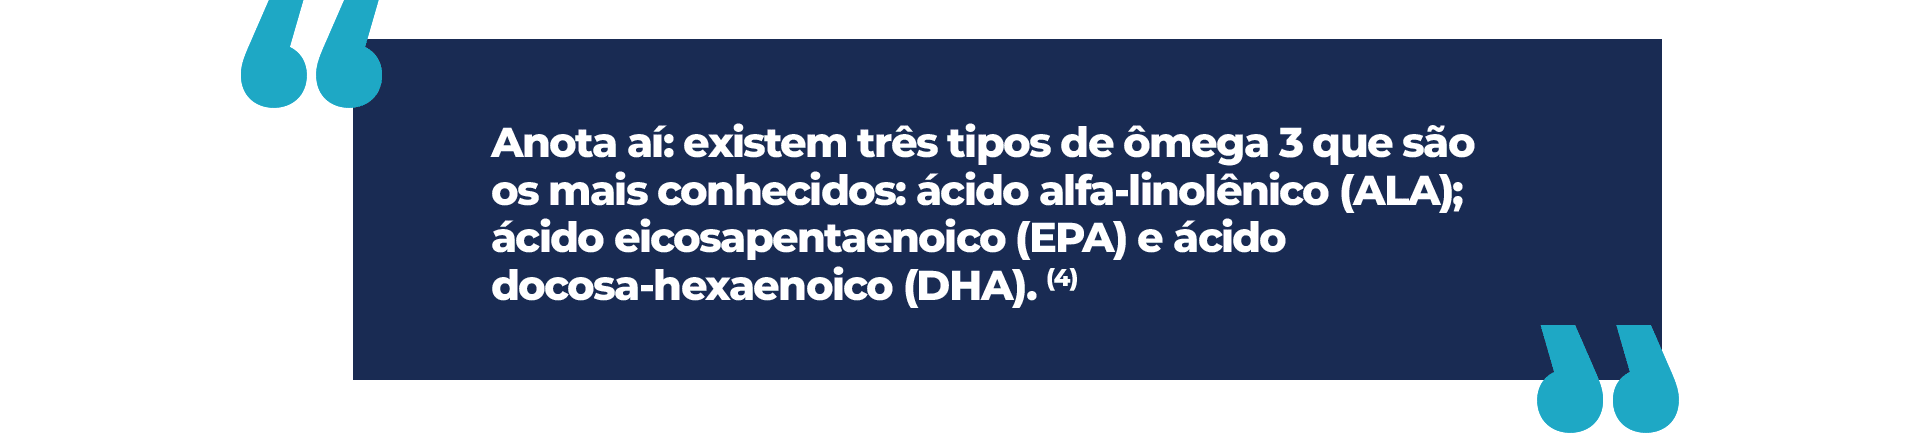 Anota aí: existem três tipos de ômega 3 que são os mais conhecidos: ácido alfa-linolênico (ALA); ácido eicosapentaenoico (EPA) e ácido docosa-hexaenoico (DHA).